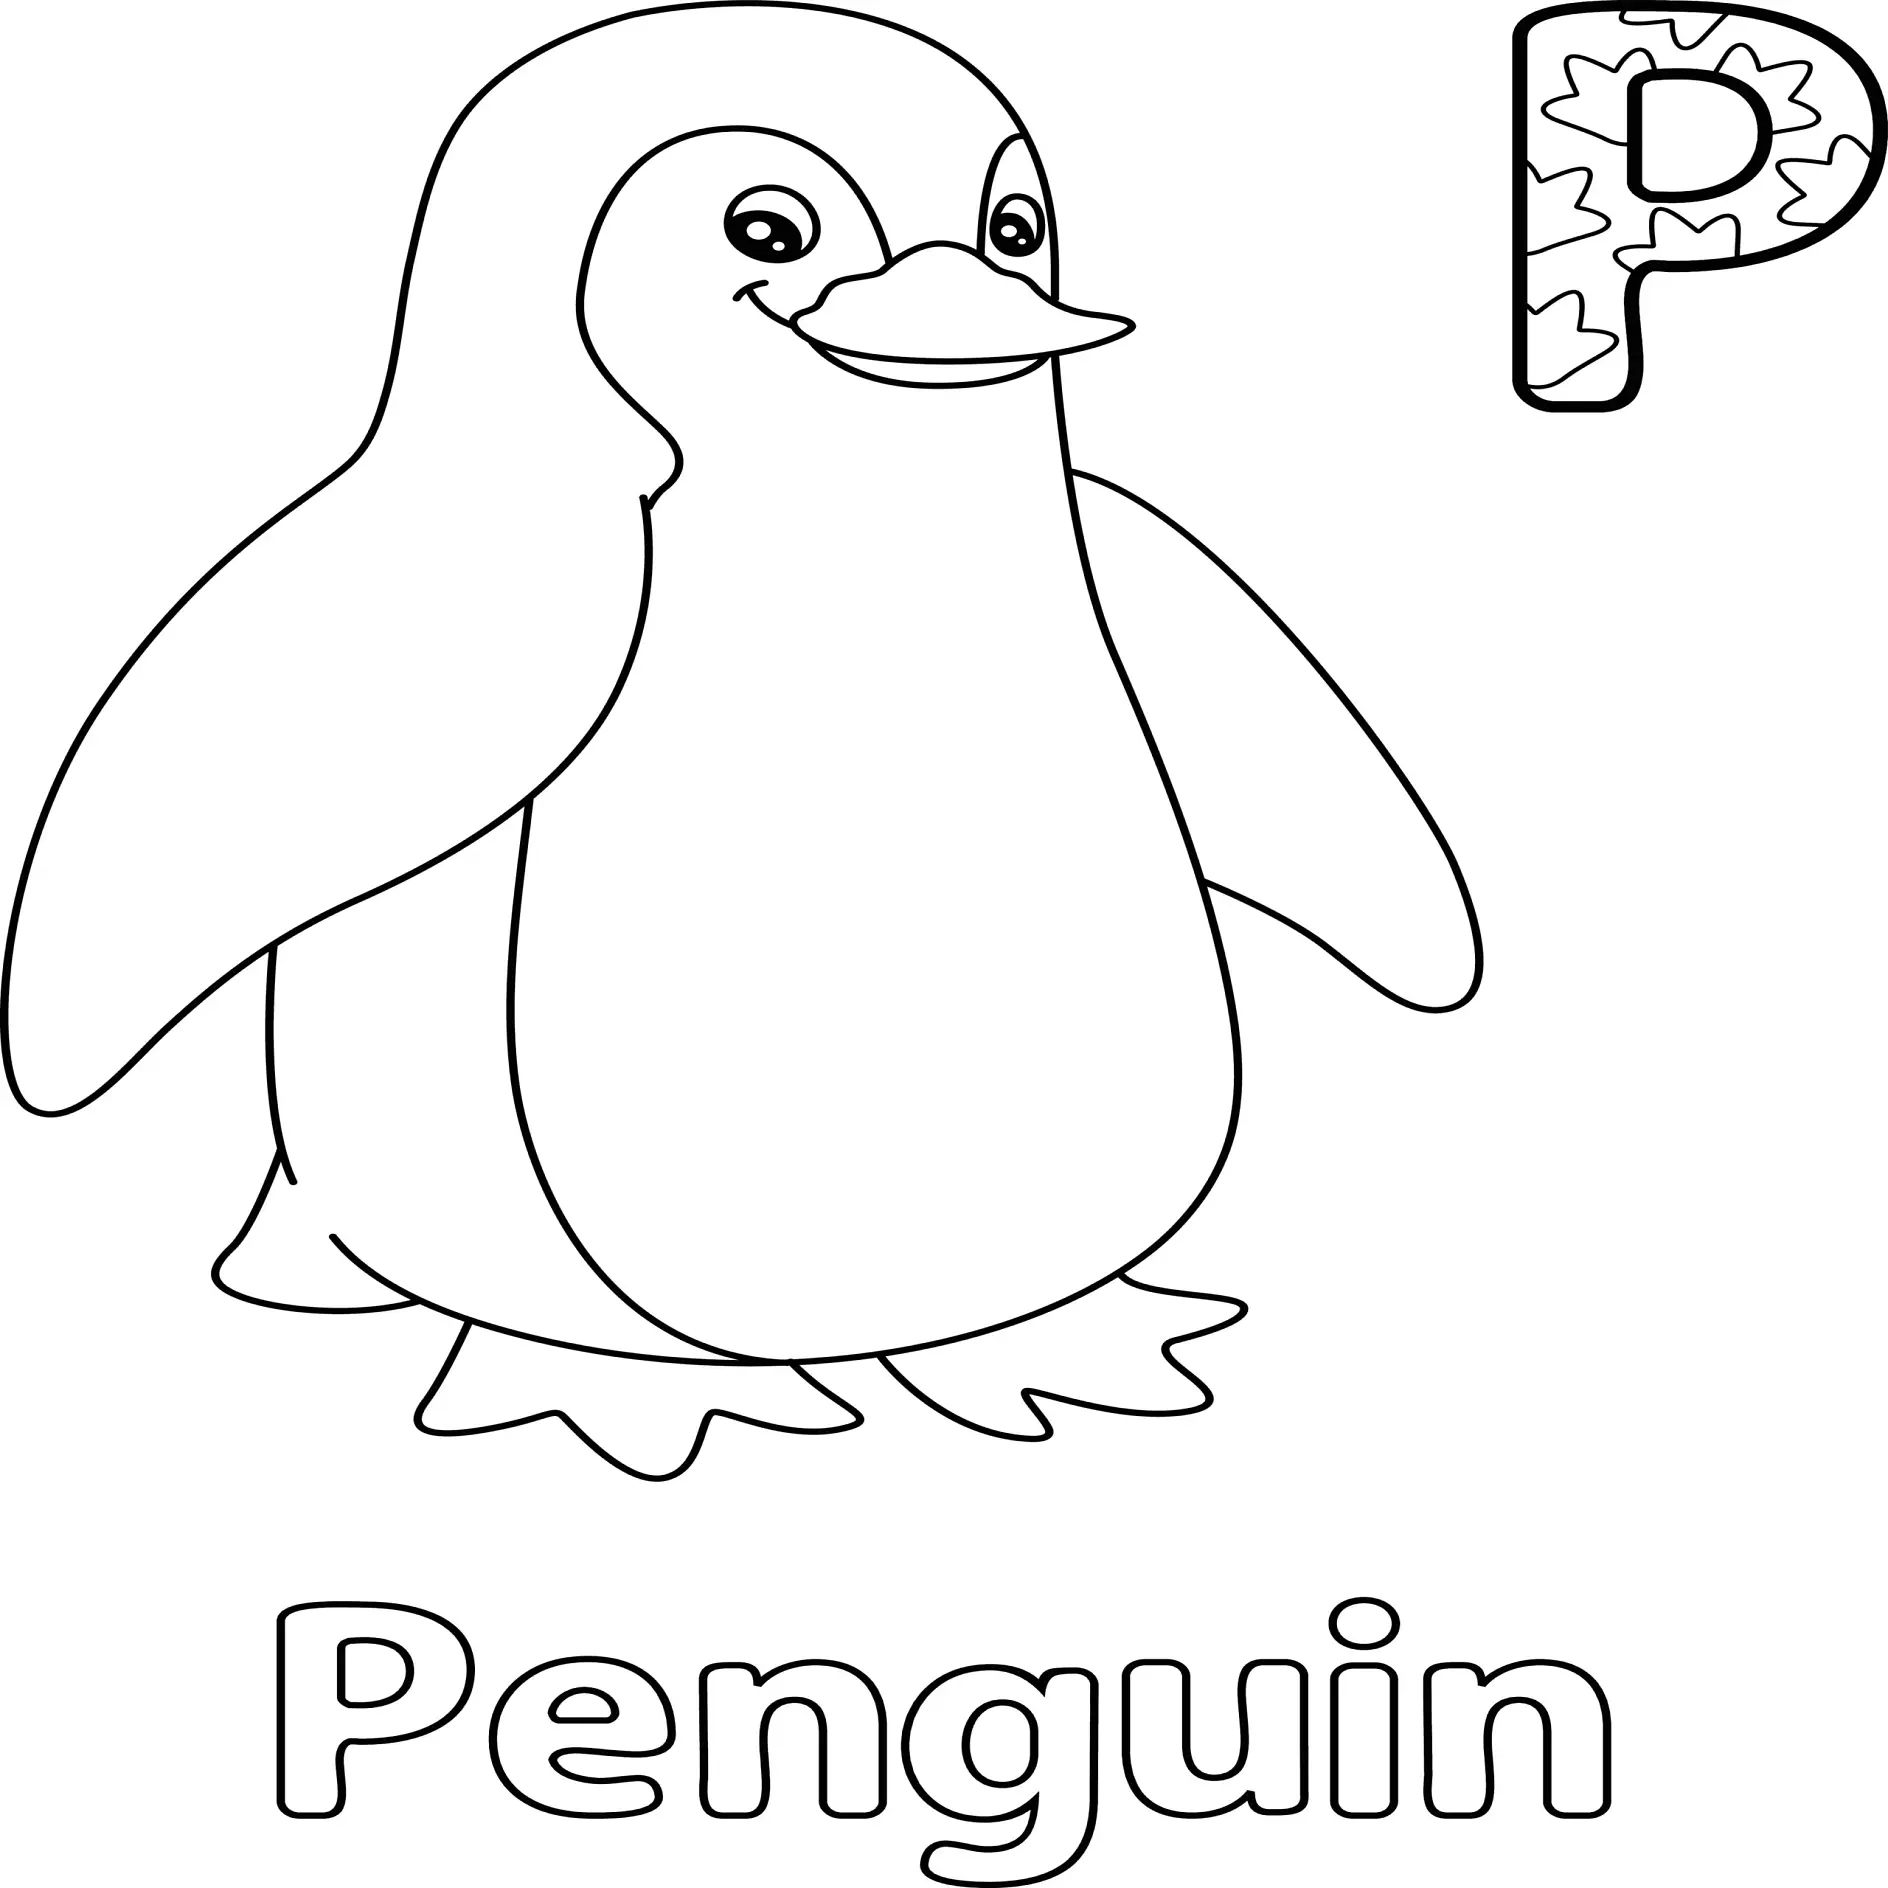 Ausmalbild Pinguin mit Buchstabe P und dem Wort "Penguin"